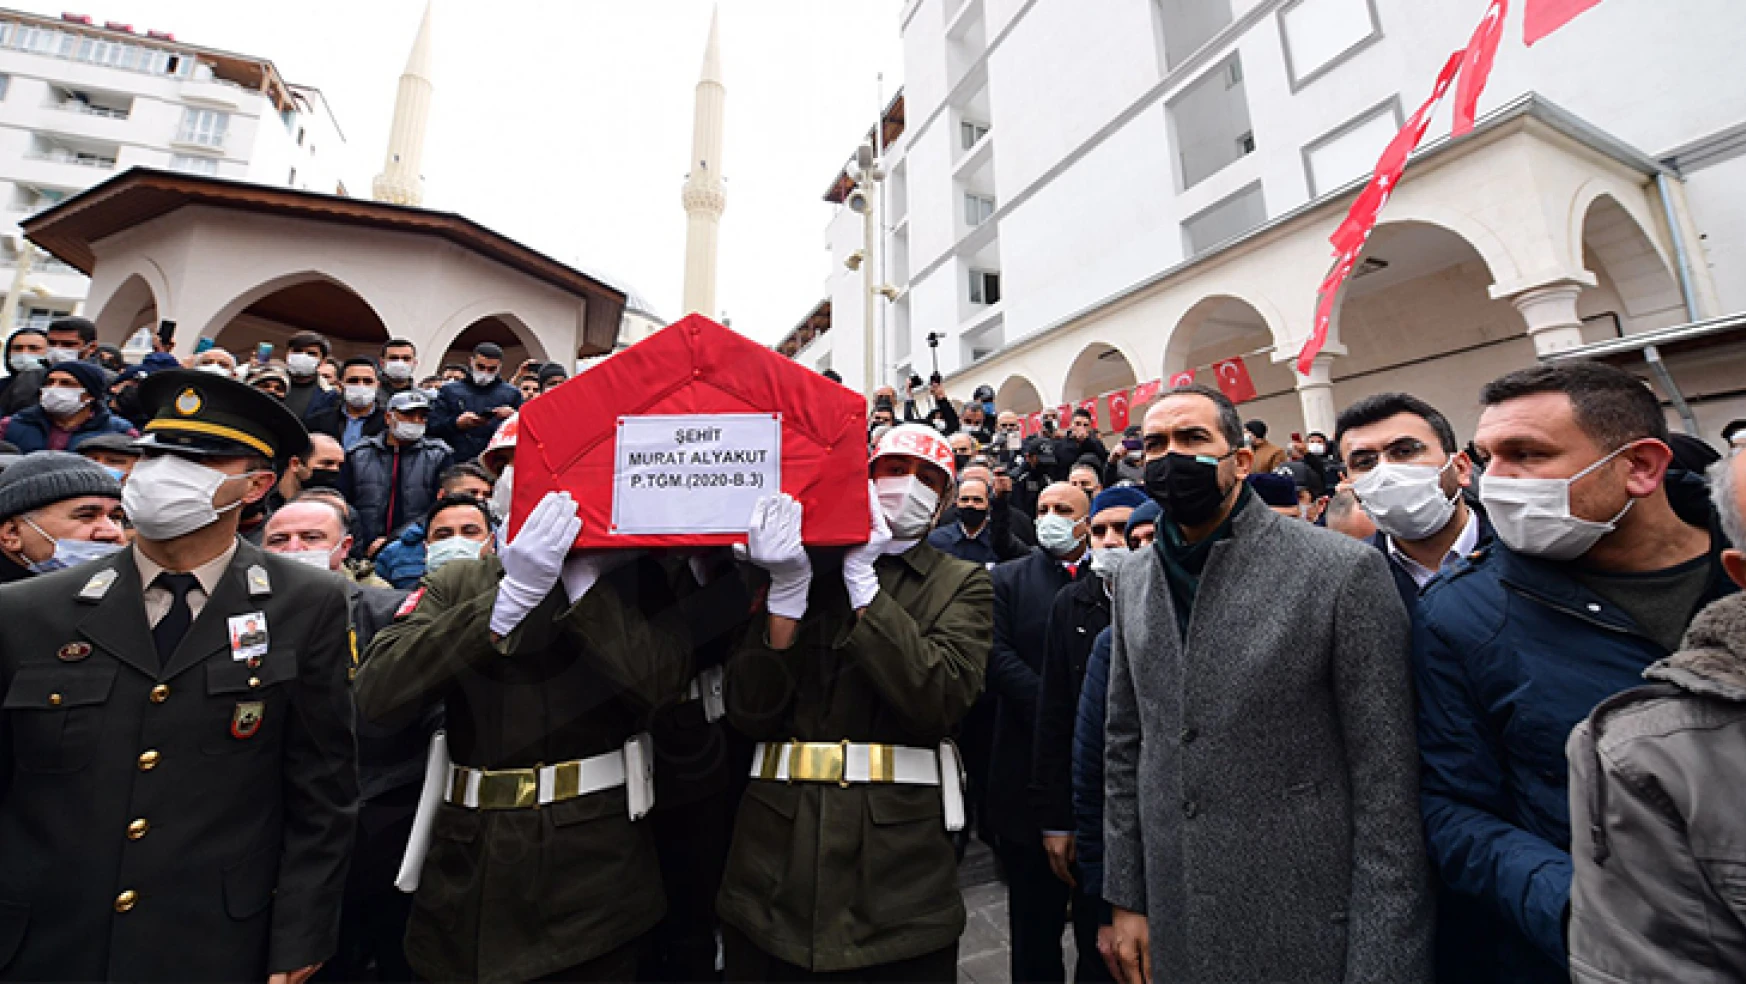 Şehit Piyade Teğmen Murat Alyakut, dualarla toprağa verildi